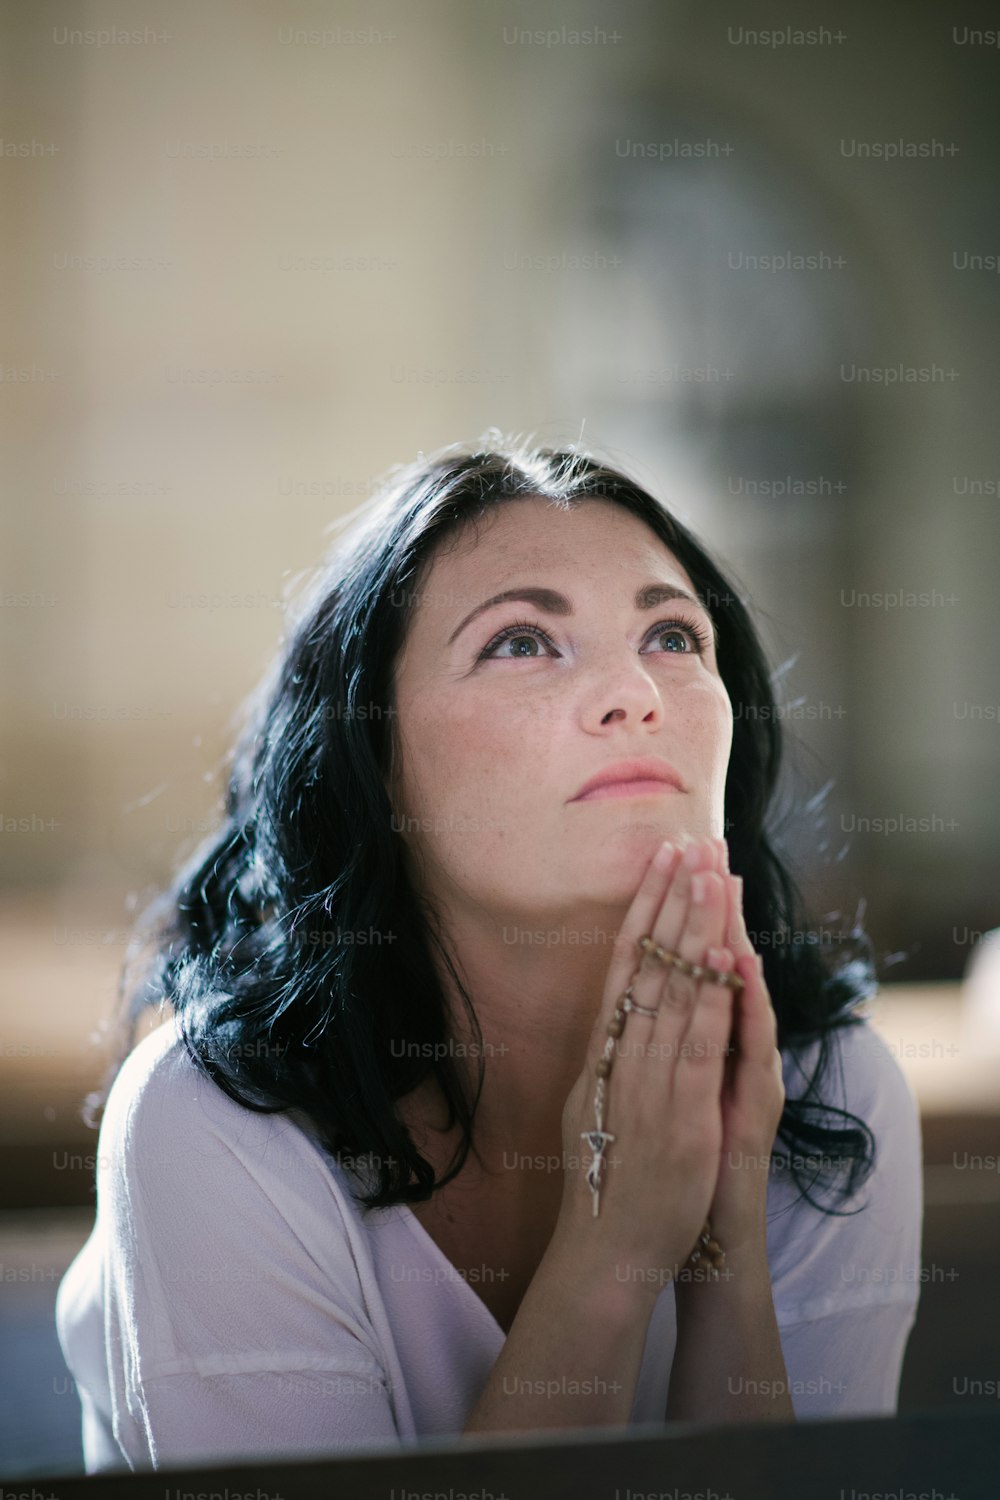 교회에서 묵주를 들고 기도하는 아름다운 여자